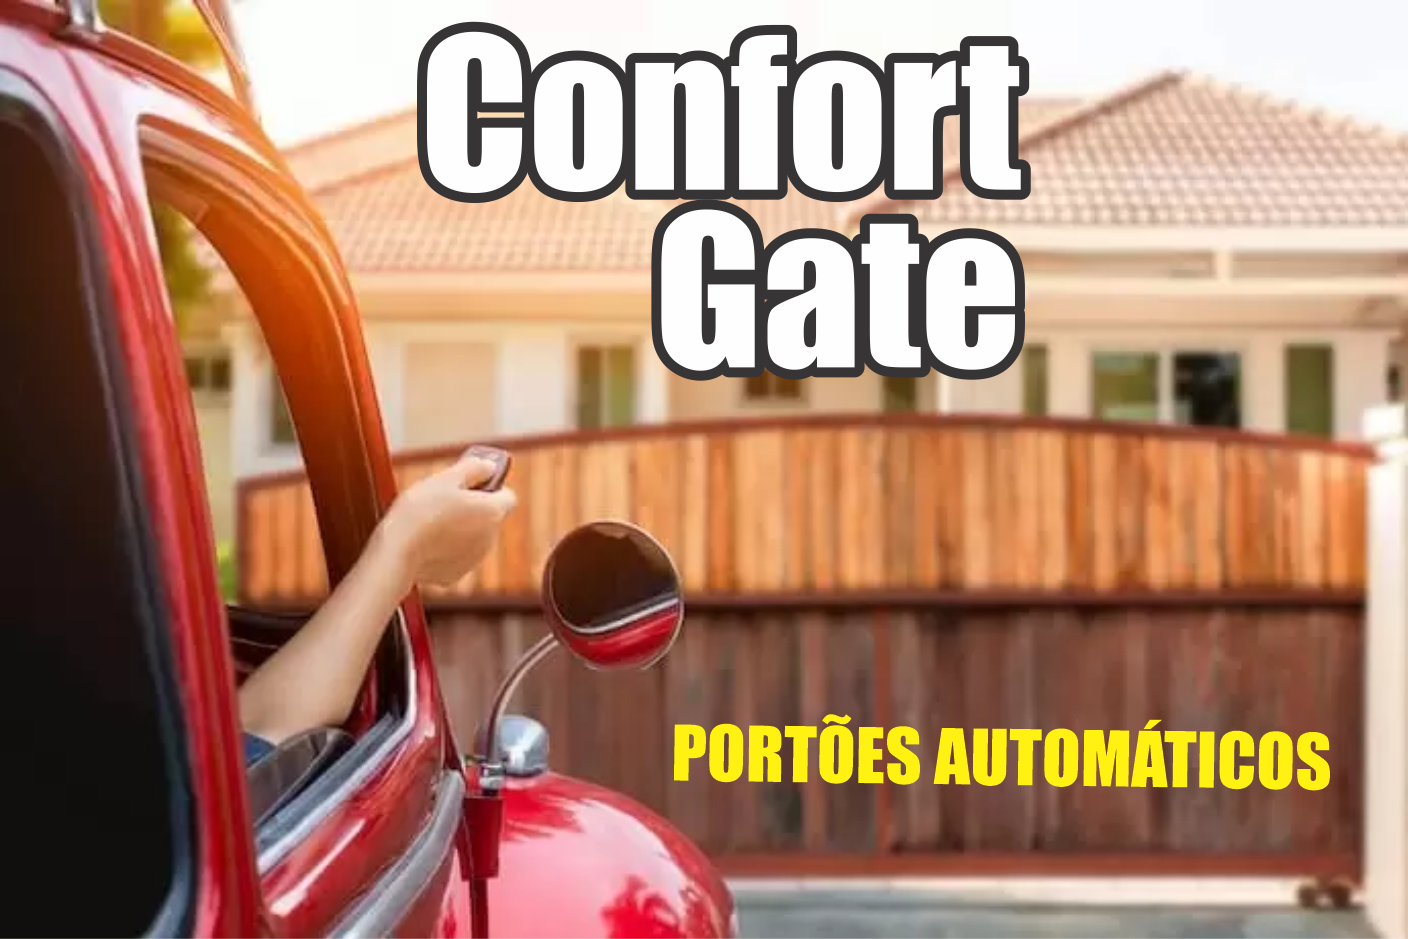 Confort Cate Portões Automáticos      Fones: (41) 98791-1299 /